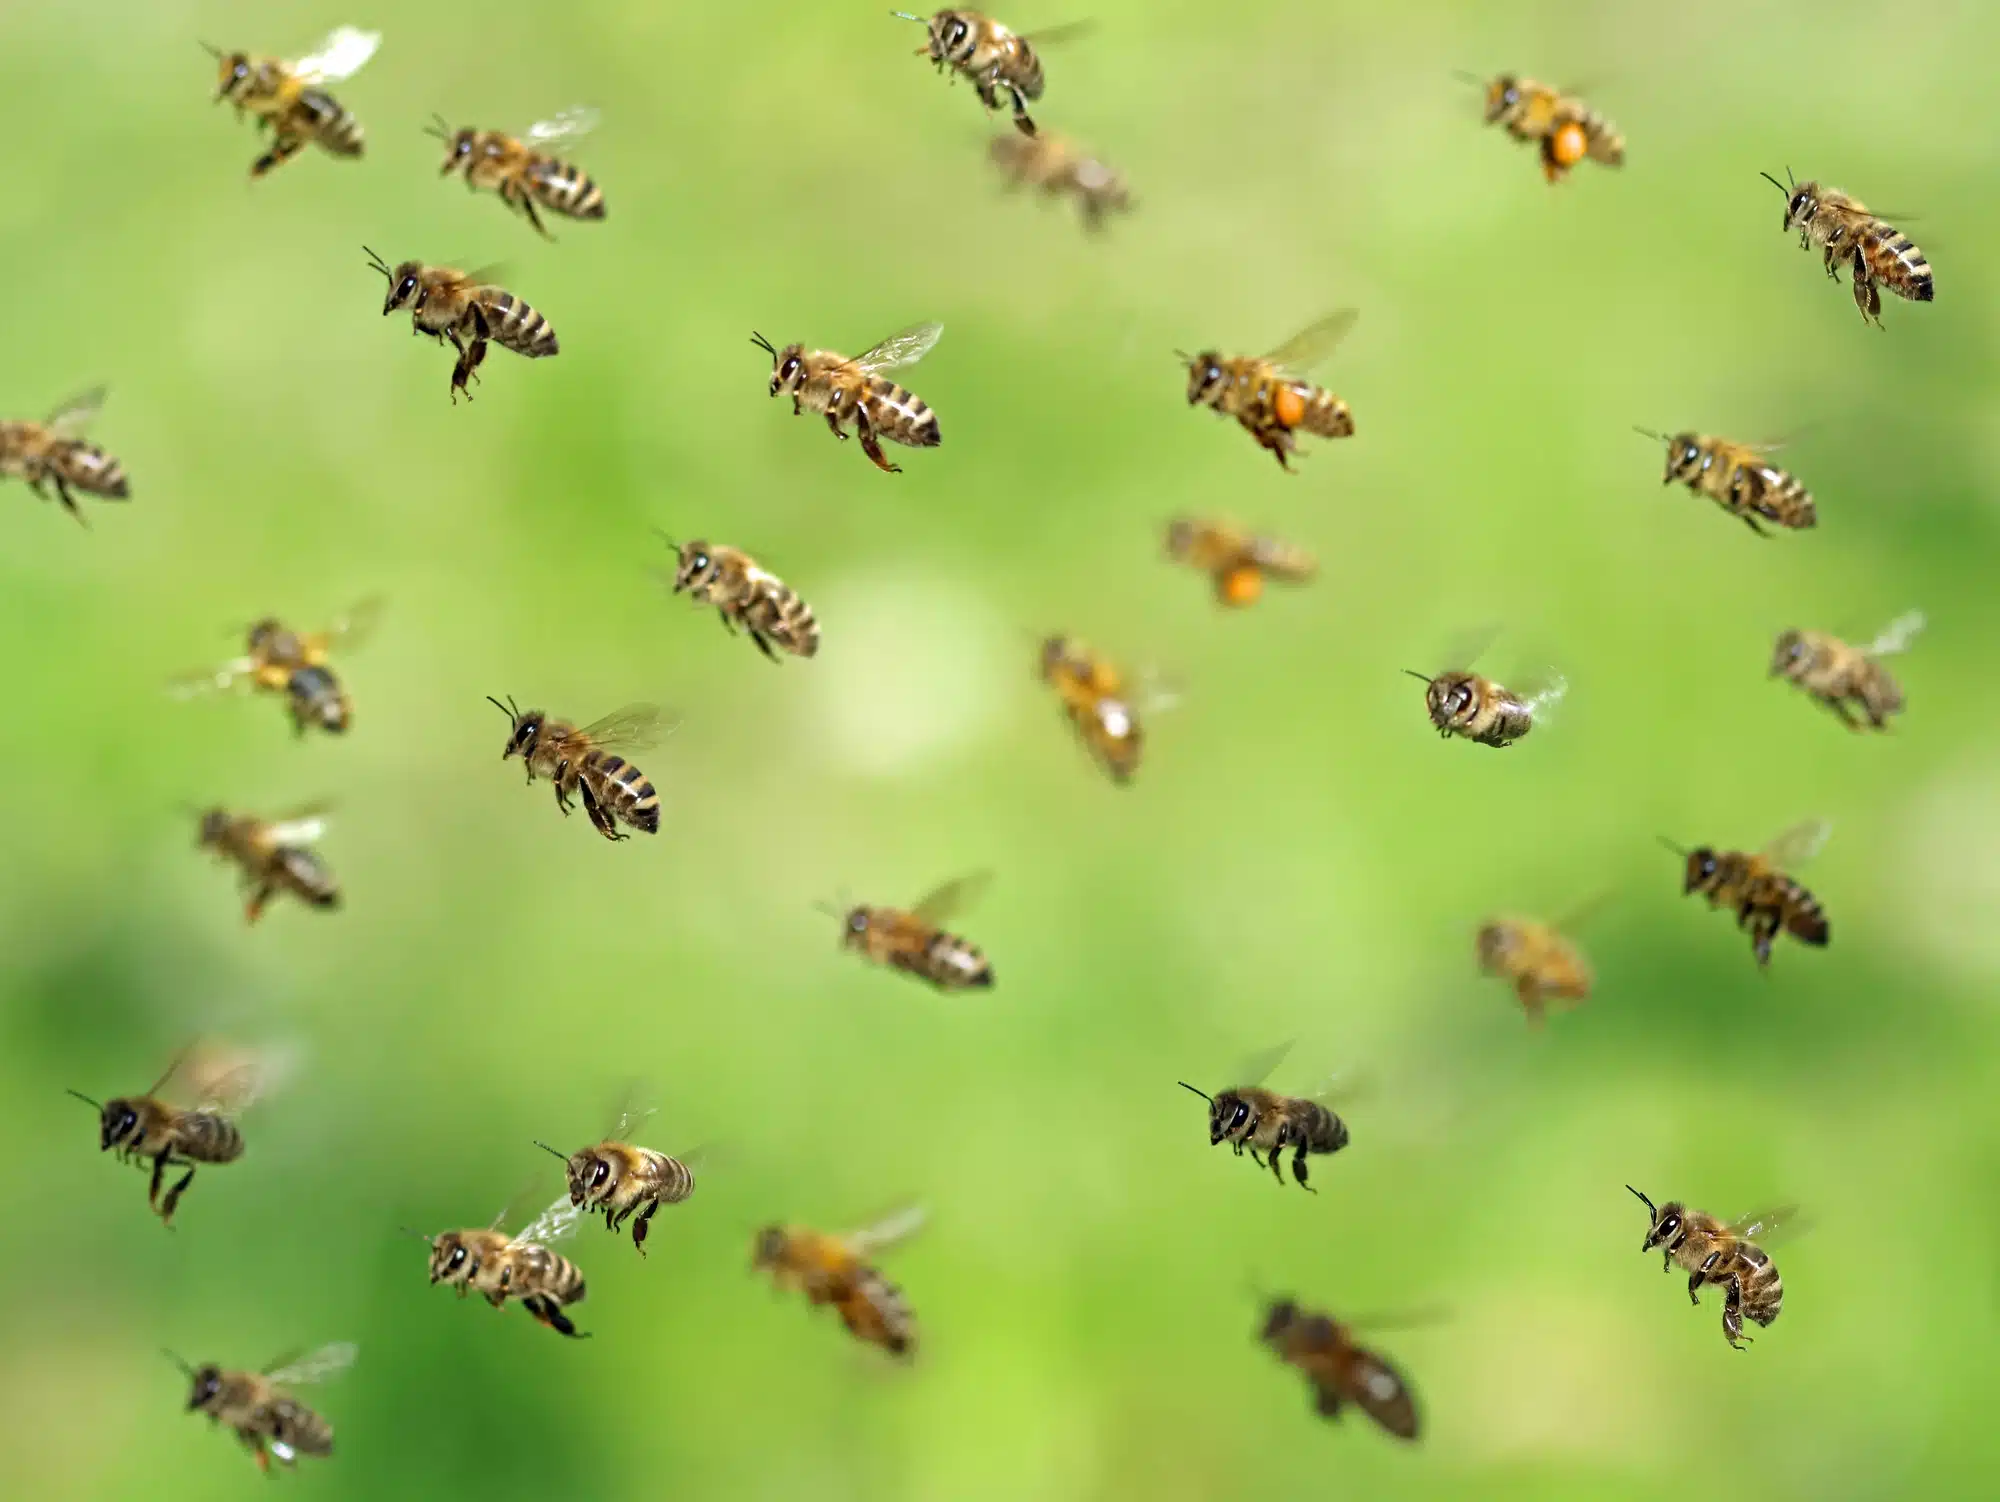 דבורים שבות לקן לאחר איסוף צוף באביב. <a href="https://depositphotos.com. ">המחשה: depositphotos.com</a>